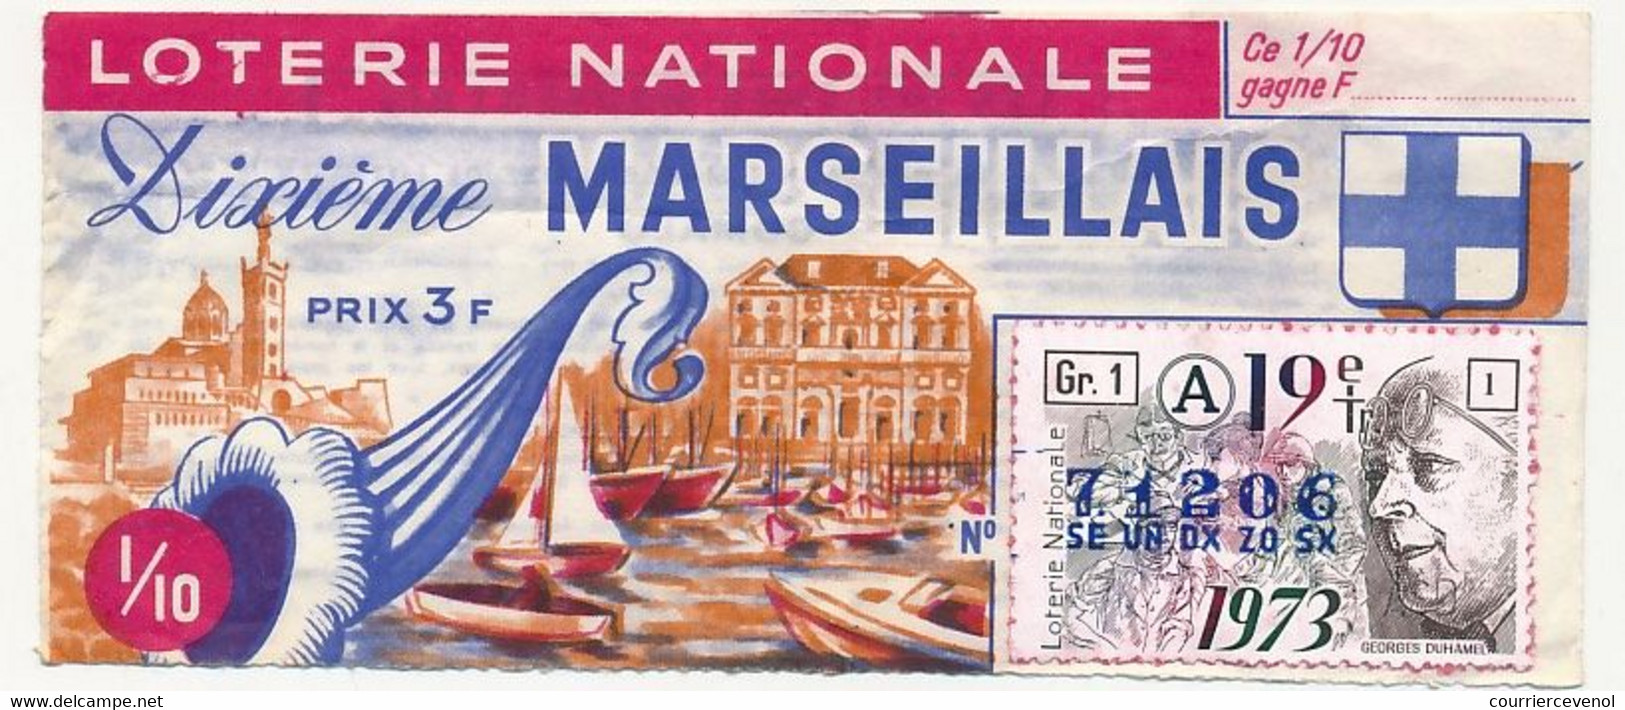 FRANCE - Loterie Nationale - 1/10ème - Dixième Marseillais - 19eme Tranche - 1973 - Lottery Tickets